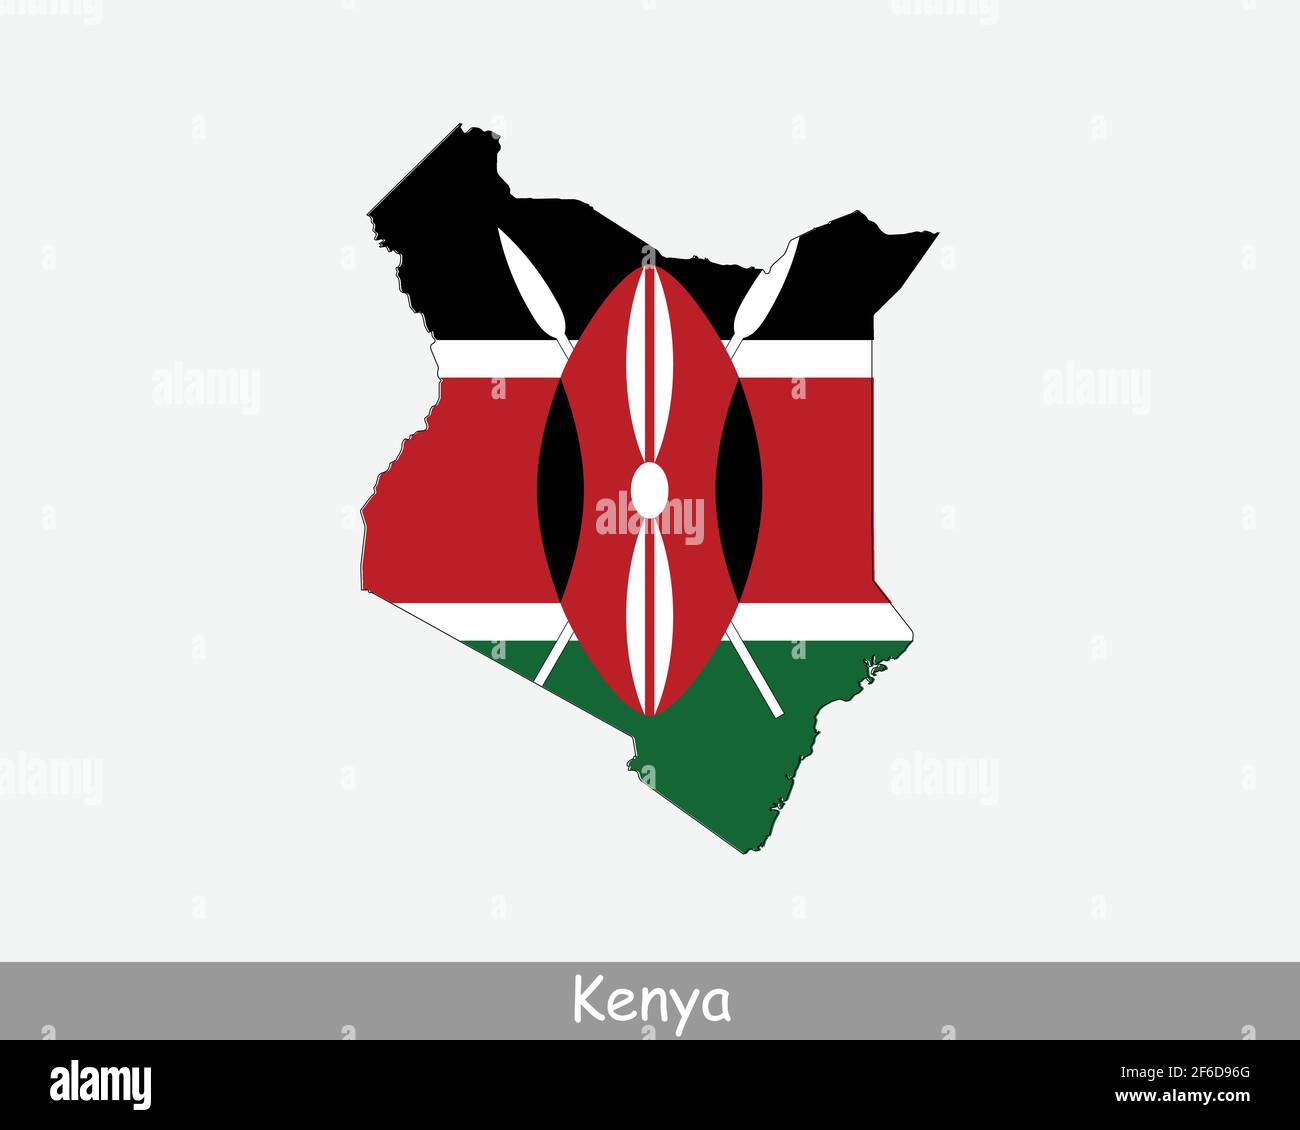 Bandiera della mappa del Kenya. Mappa della Repubblica del Kenya con la bandiera nazionale keniota isolata su sfondo bianco. Illustrazione vettoriale. Illustrazione Vettoriale